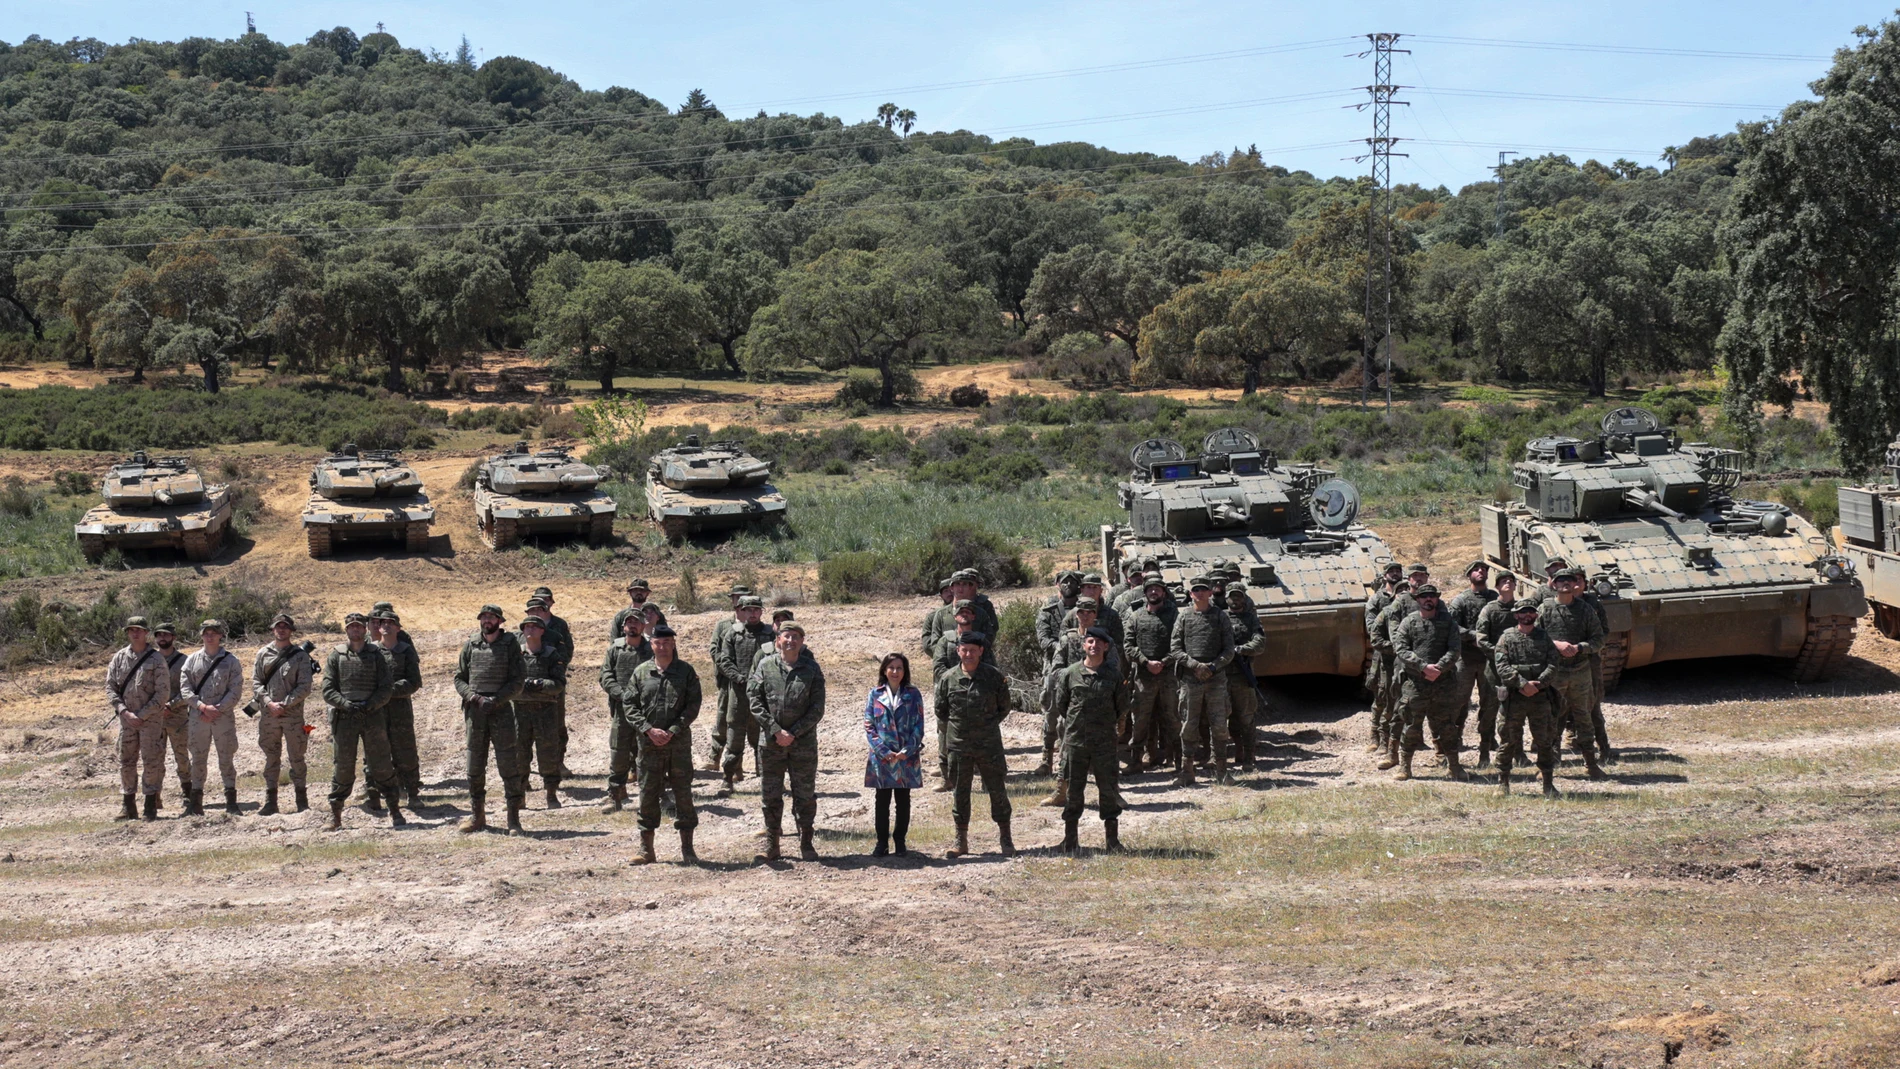 Los Leopard españoles para Ucrania superan las pruebas de rodaje y tiro y serán enviados en unos días